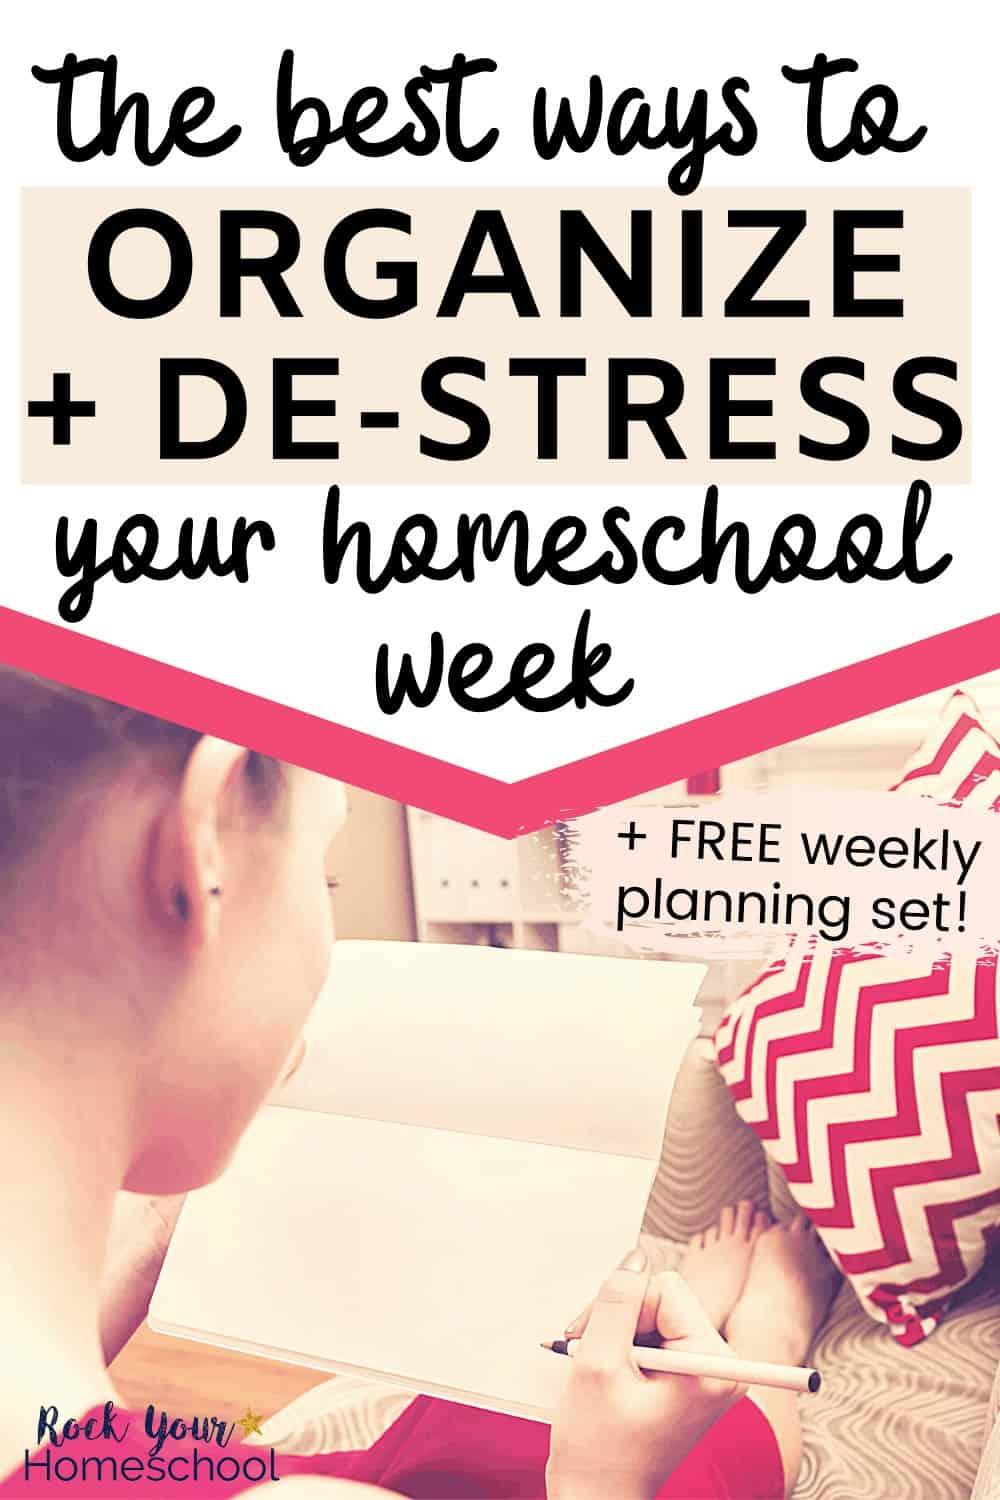 The Best Ways to Organize & De-Stress Your Homeschool Week